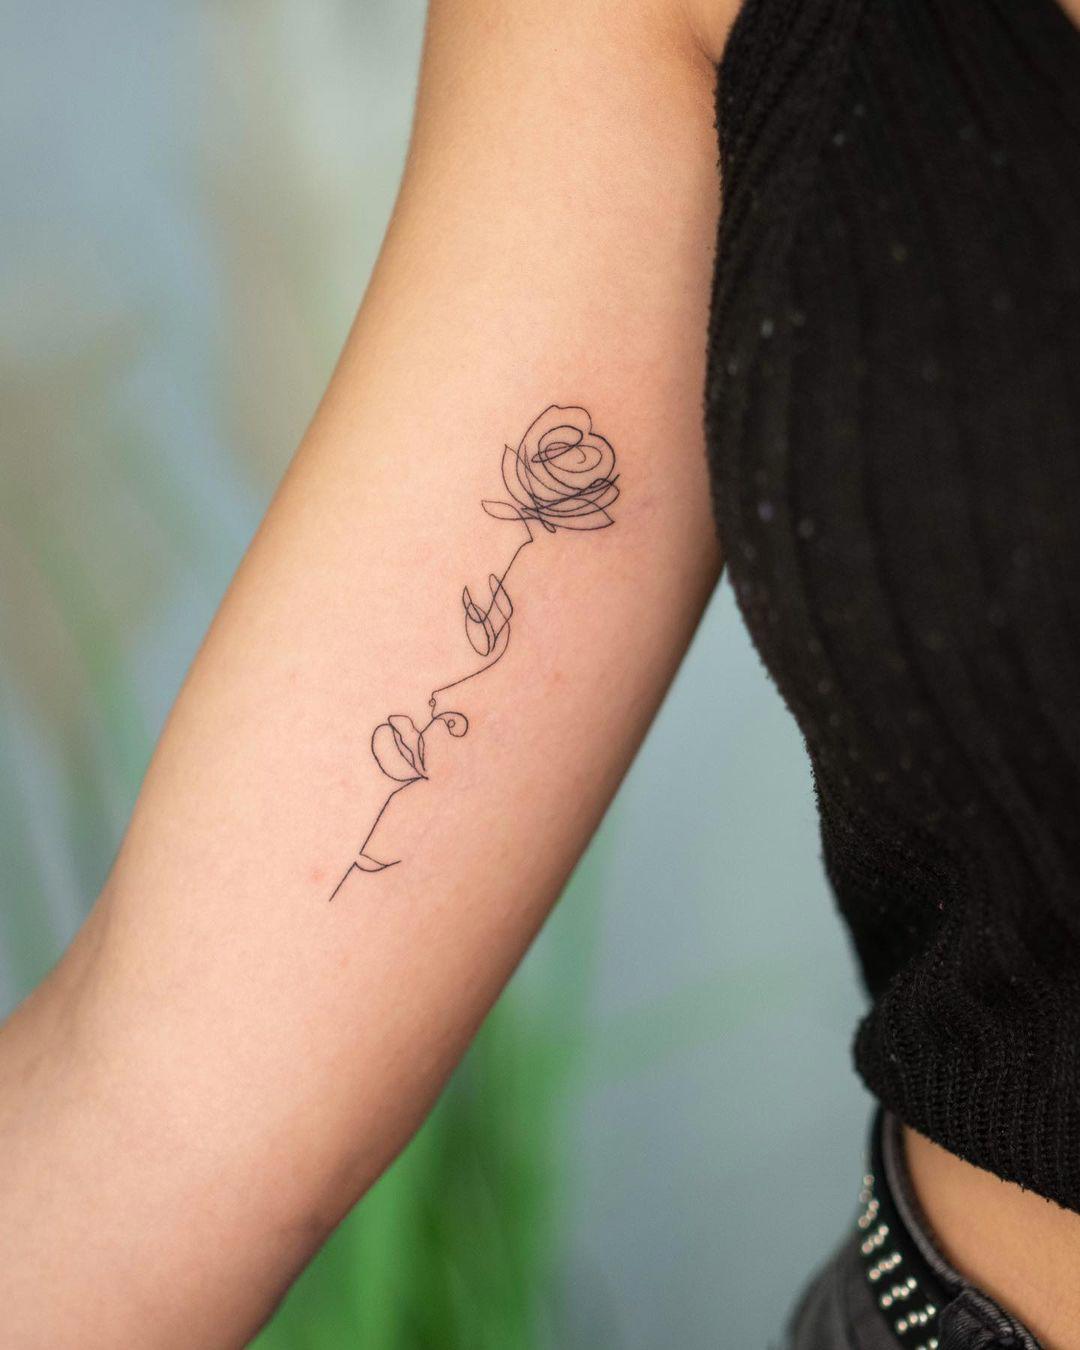 Tatuaje de flor y mujer